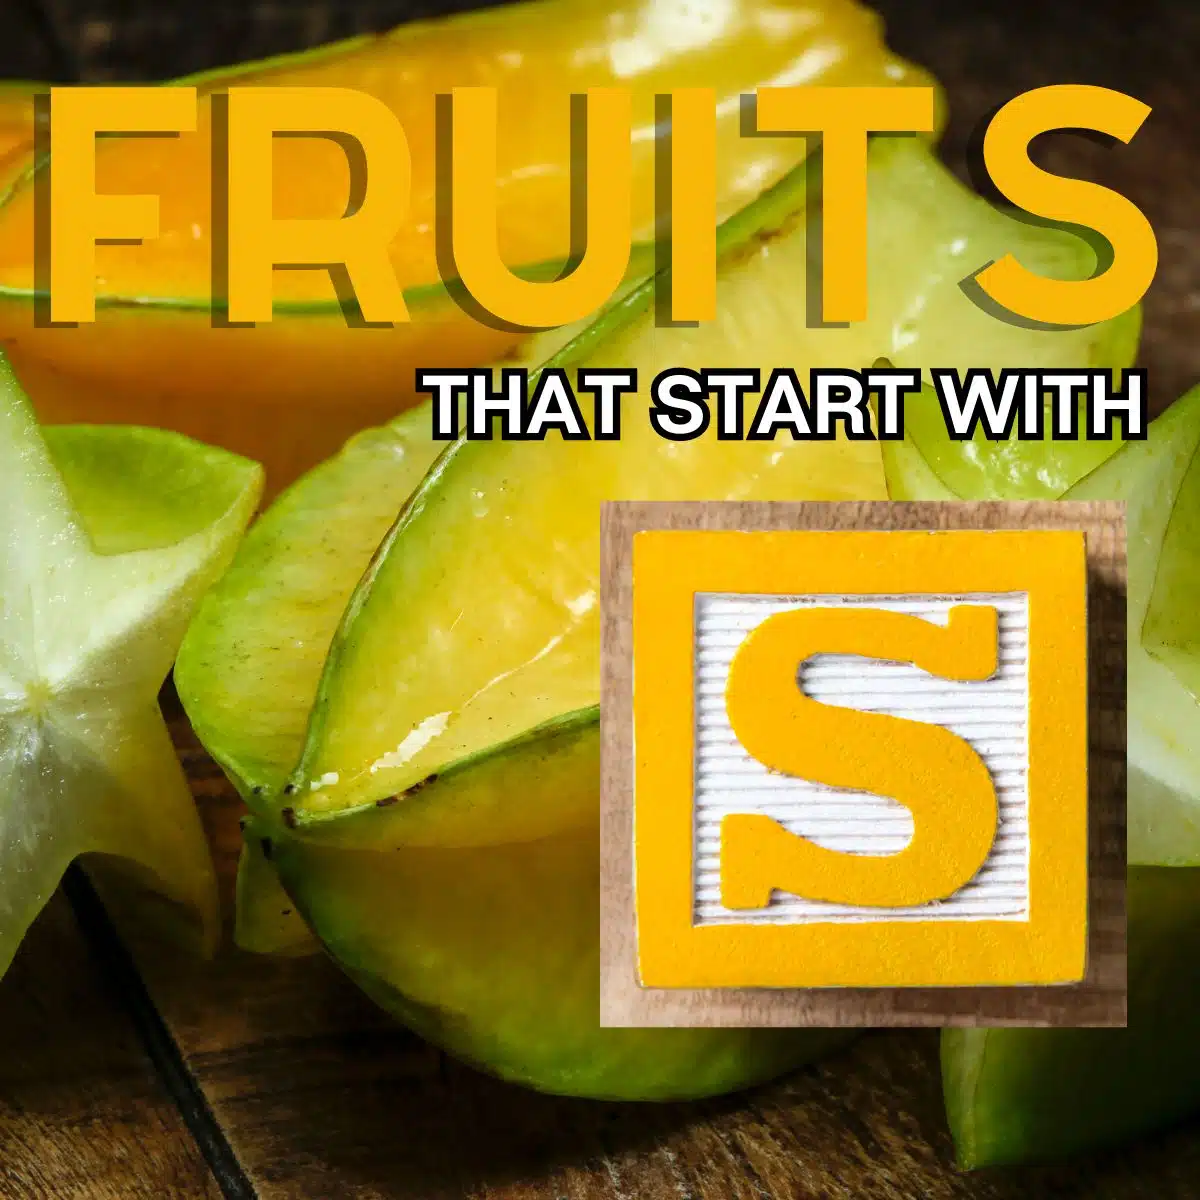 Firkantet billede for frugter, der starter med bogstavet S, med starfruit.